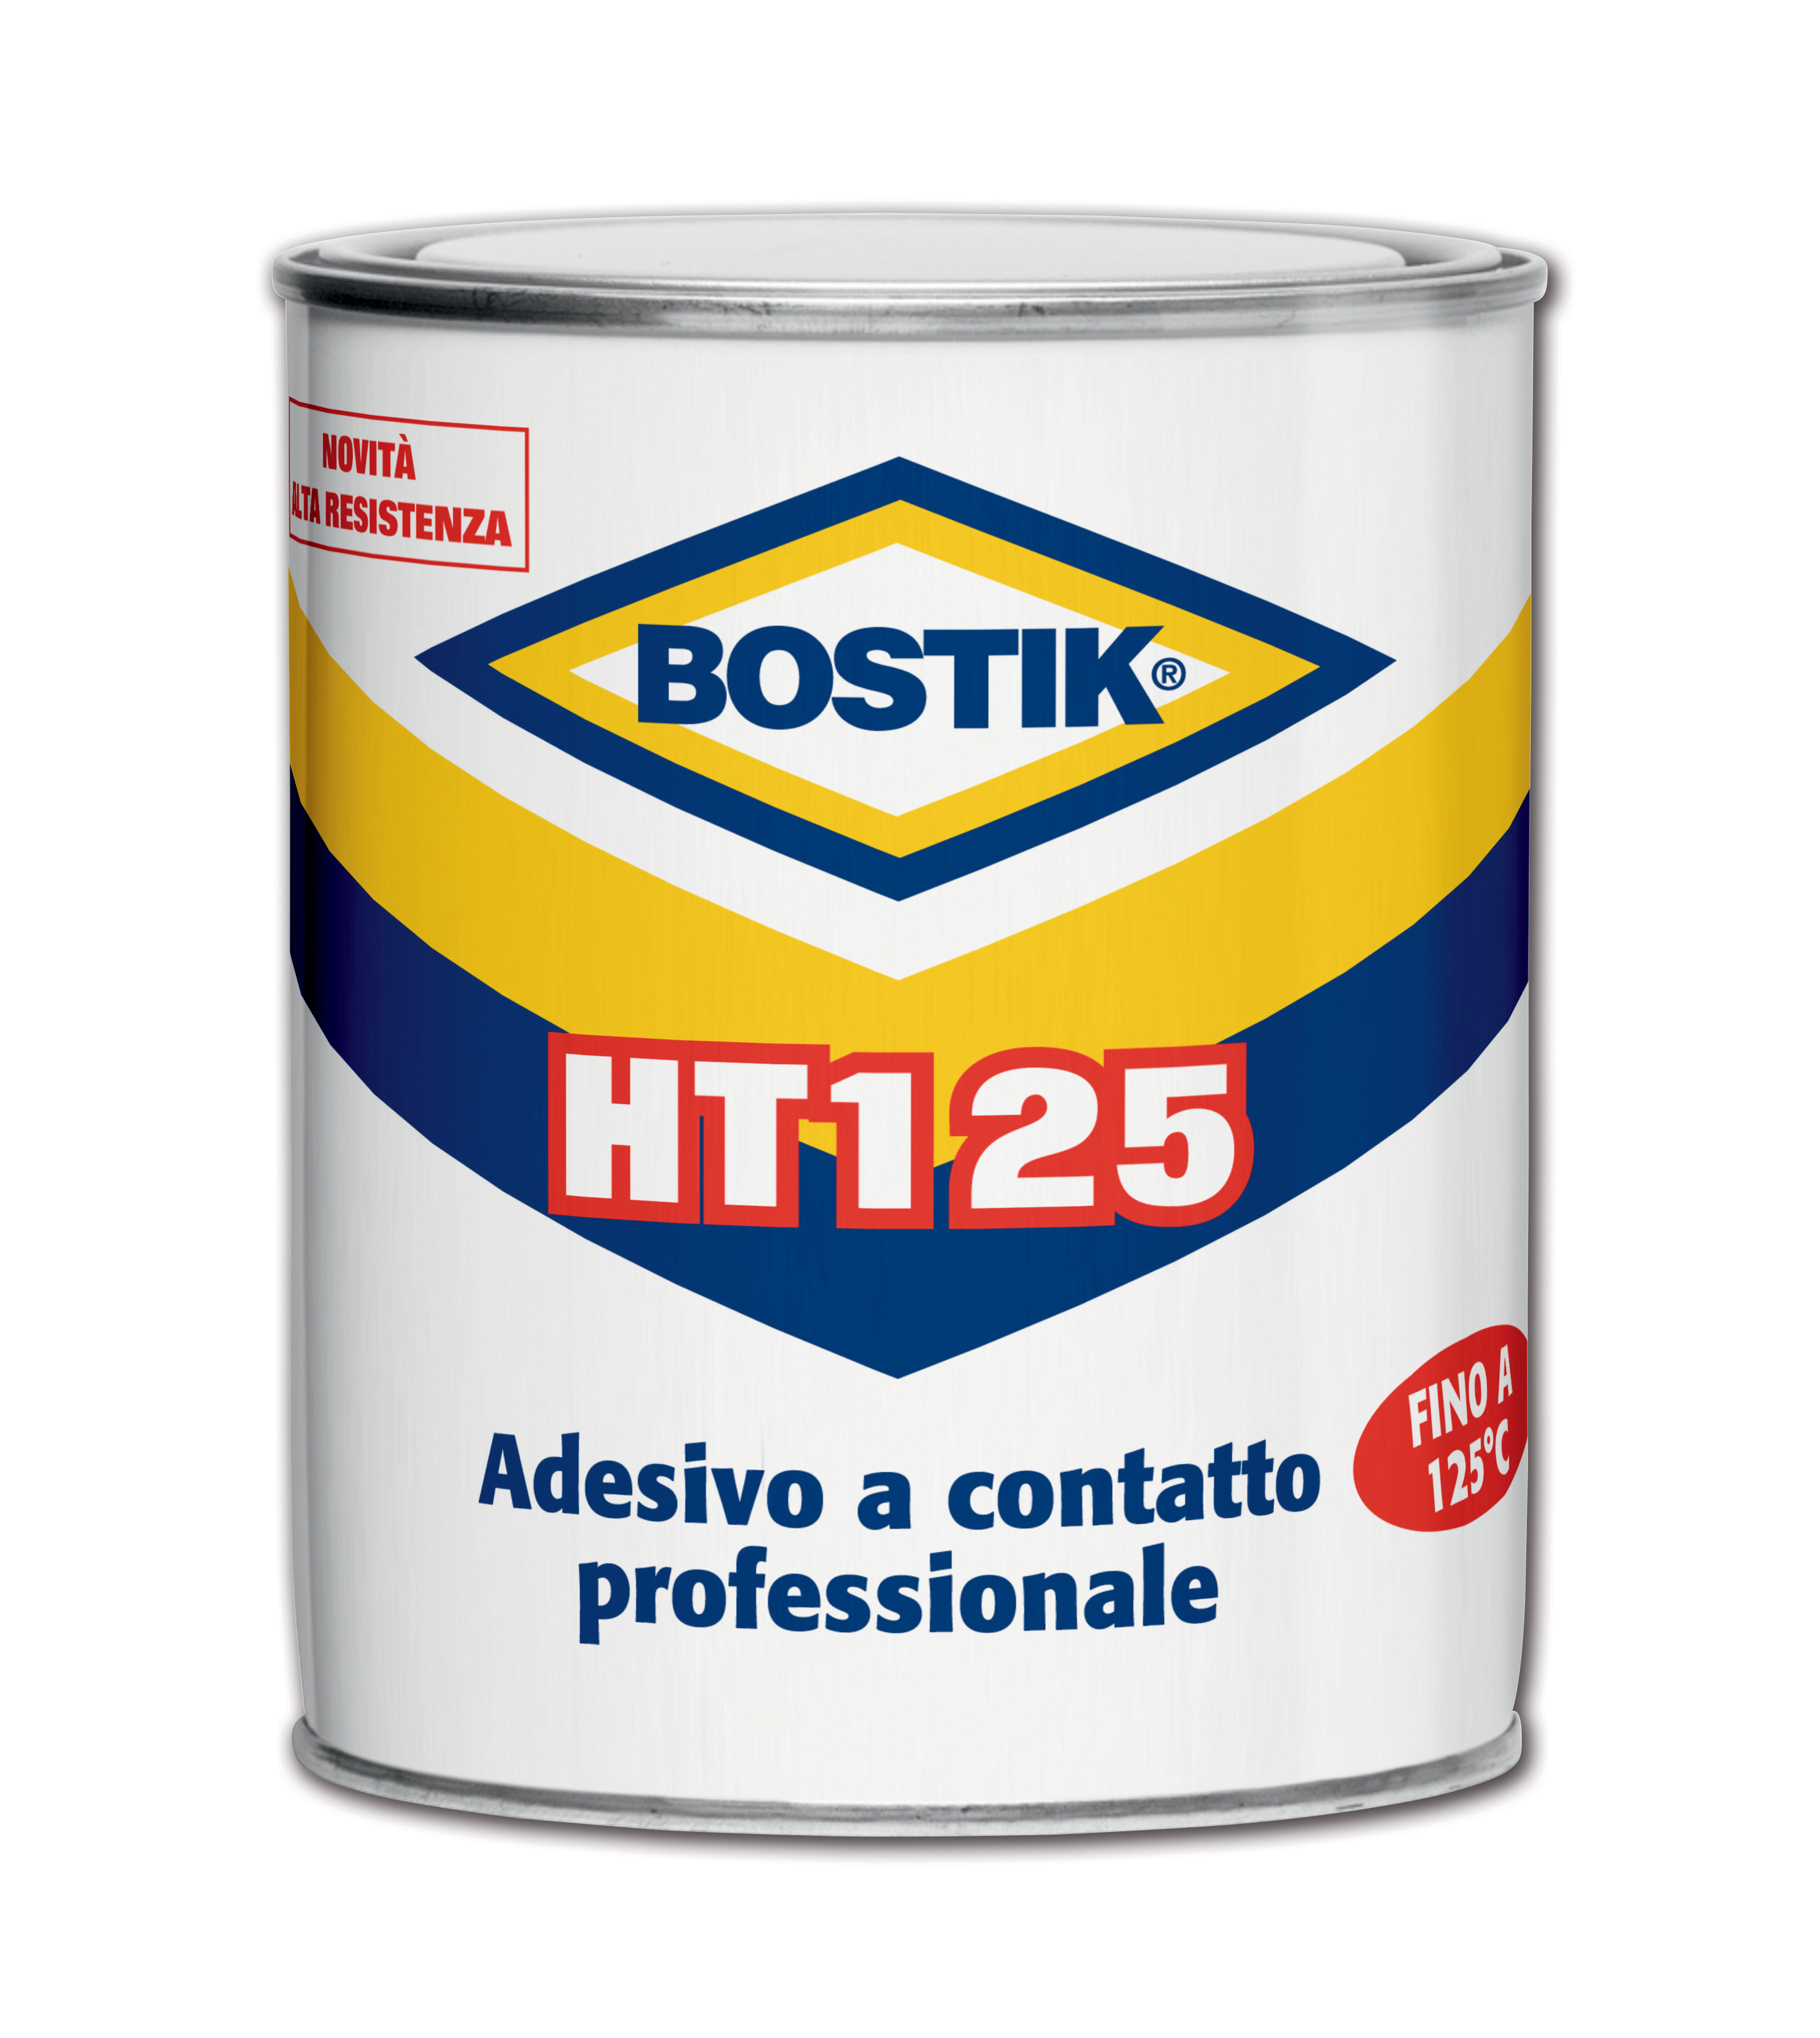 Bostik - ht125 adesivo contatto arancione 850 ml